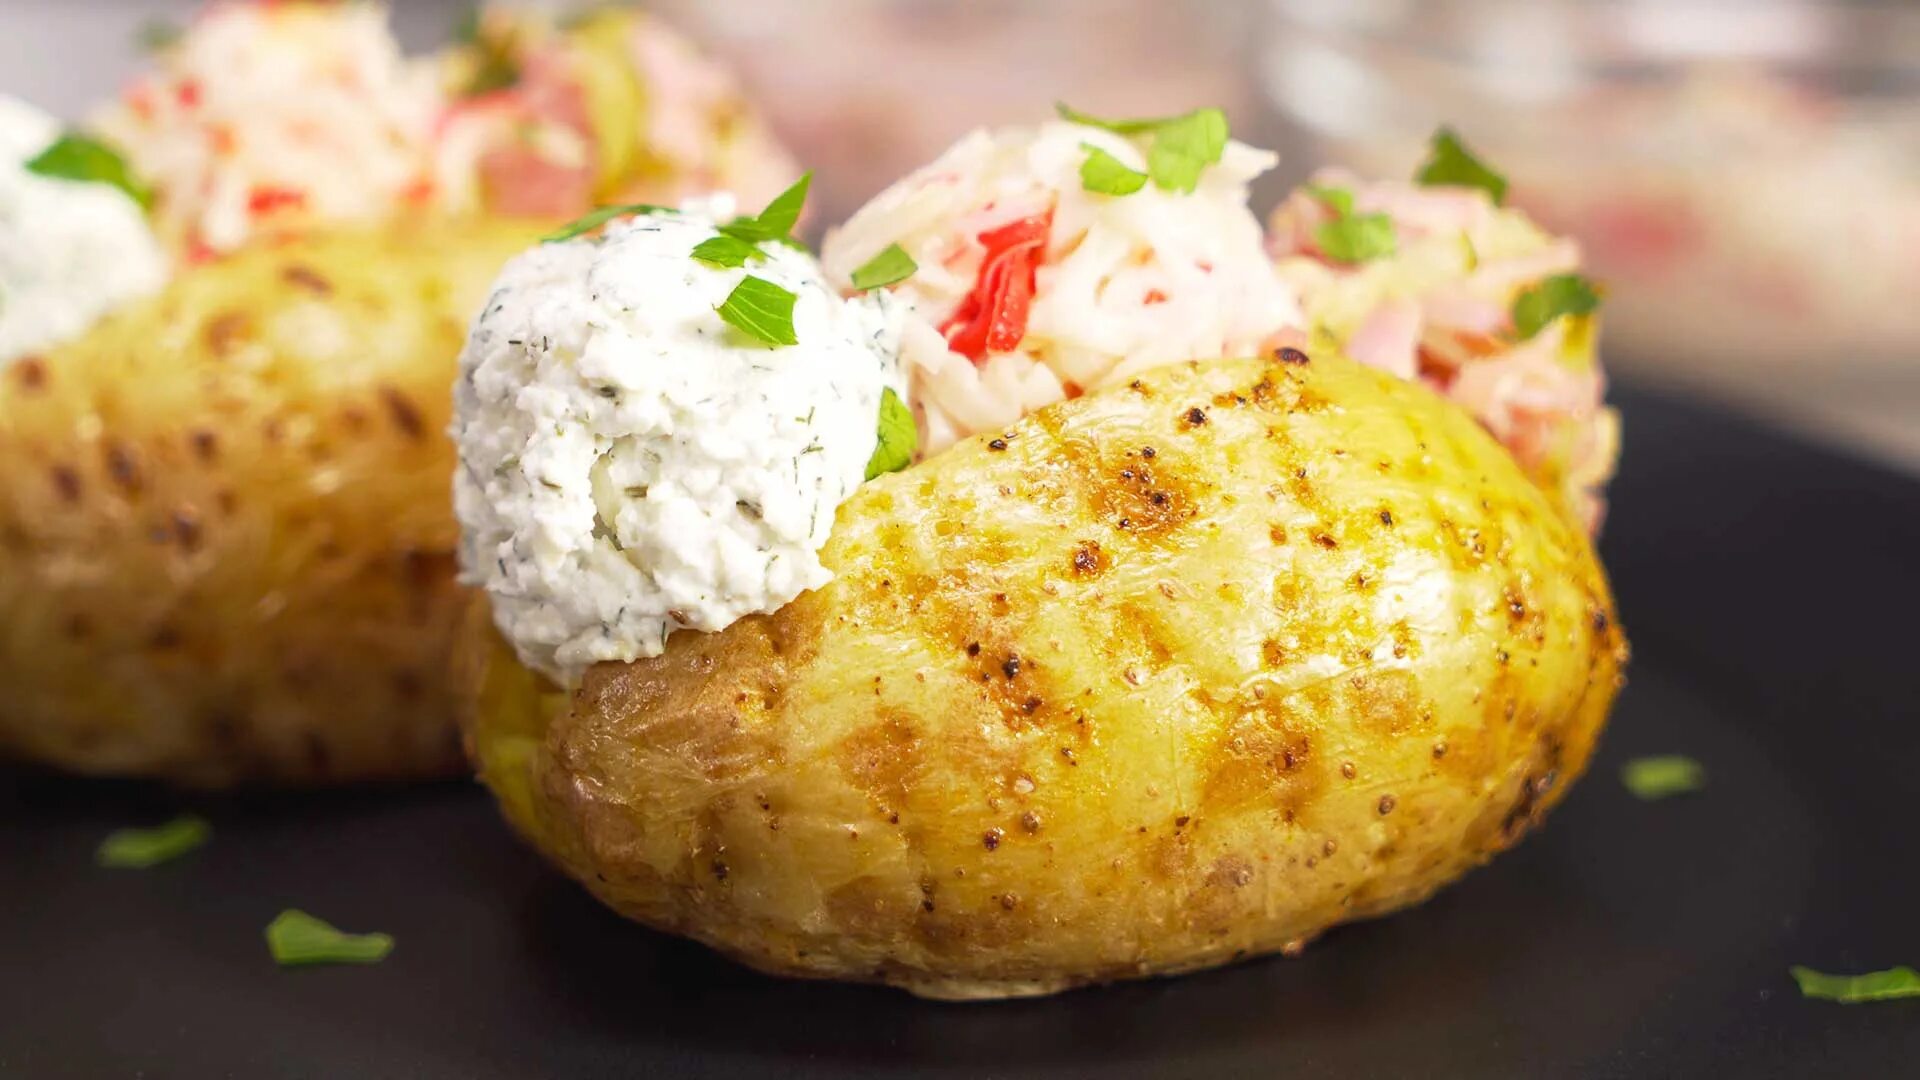 Крошка карт. Печеный картофель крошка-картошка. Картофель запеченный крошка картошка. Картошка из крошки картошки. Крошка-картошка (запеченная в духовке).